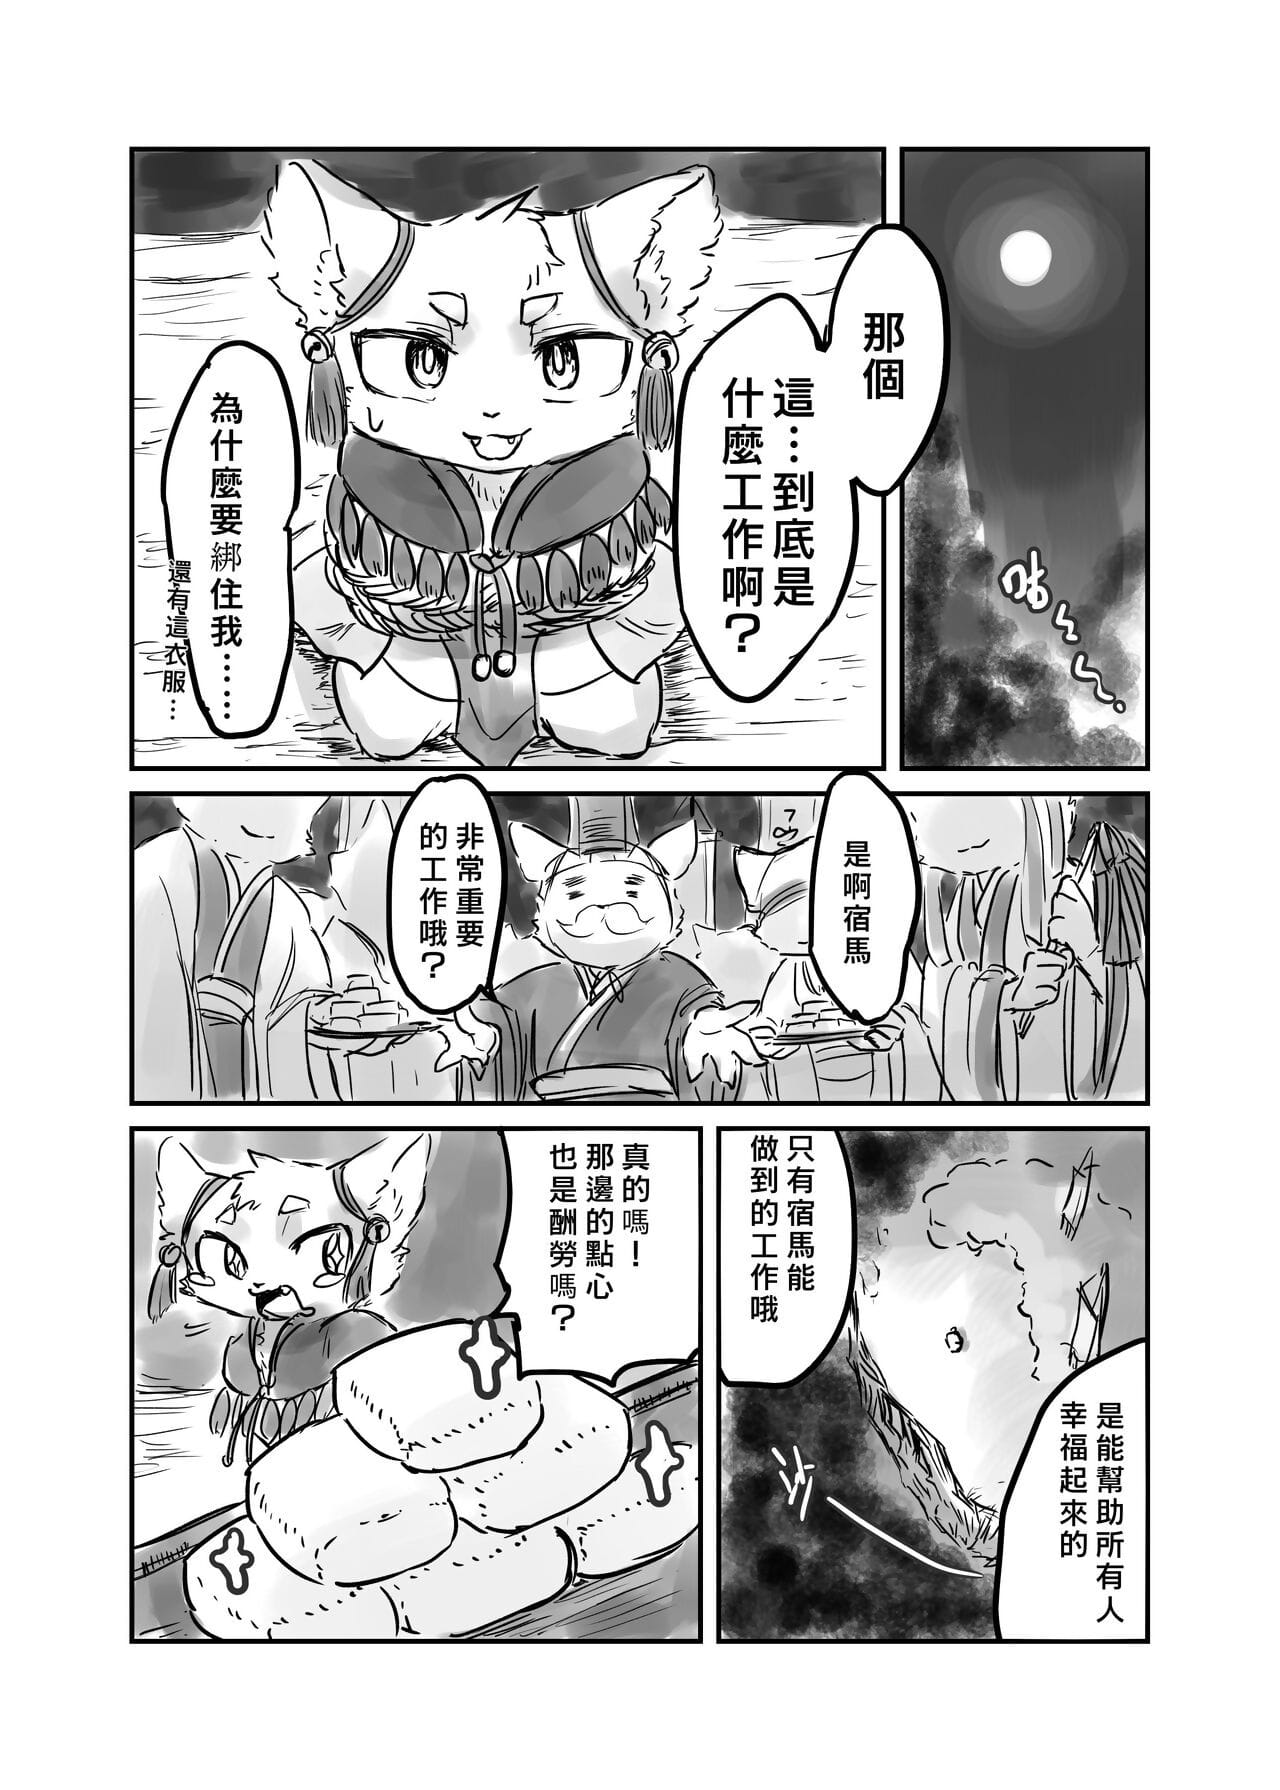 （the gość 他乡之人 by：鬼流 część 3 page 1